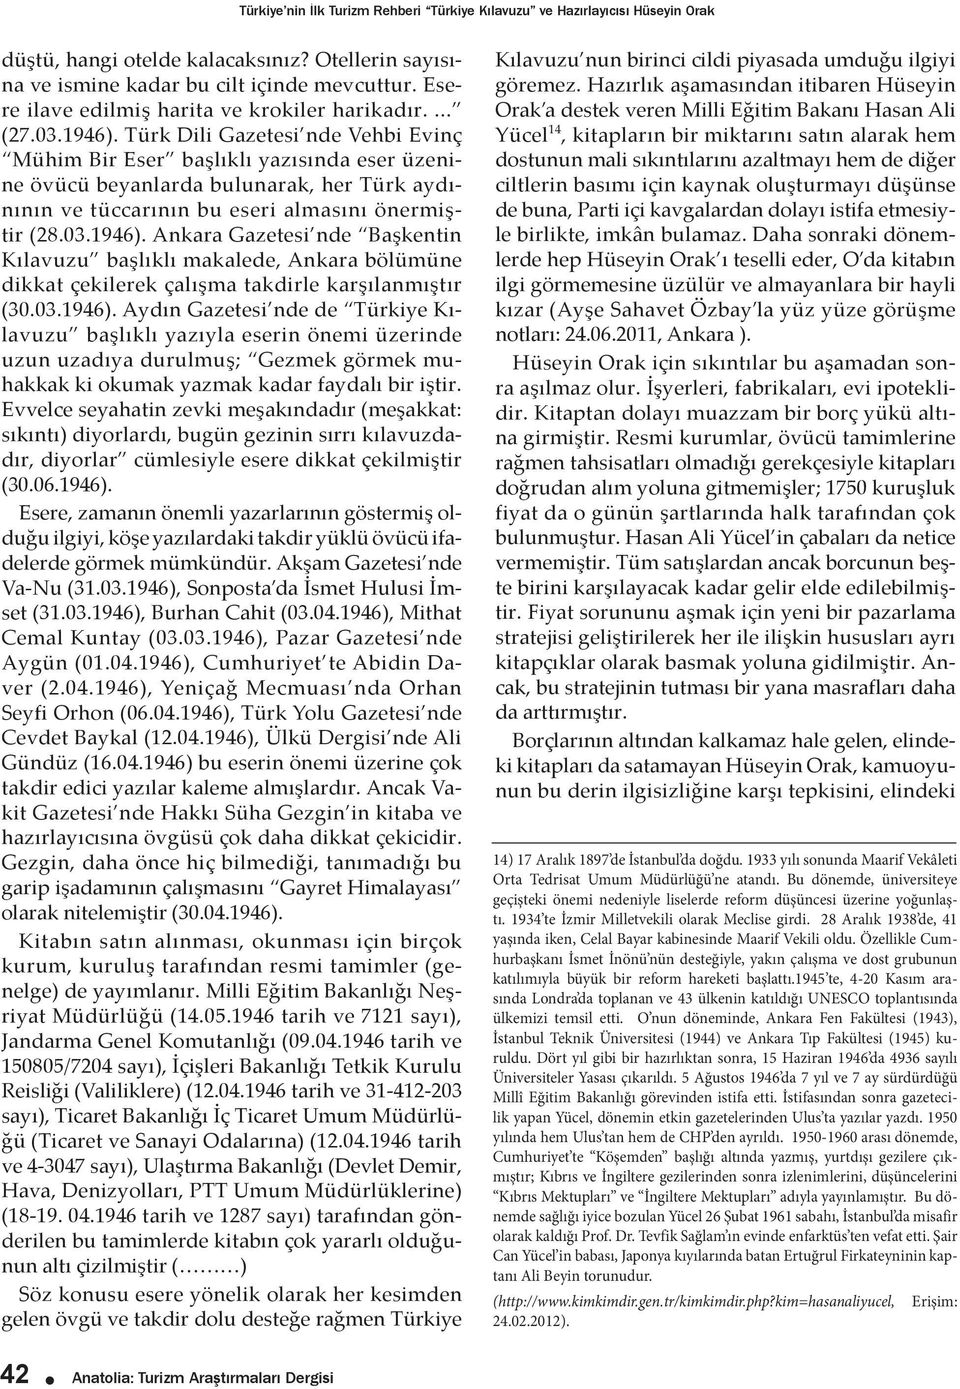 Türk Dili Gazetesi nde Vehbi Evinç Mühim Bir Eser başlıklı yazısında eser üzenine övücü beyanlarda bulunarak, her Türk aydınının ve tüccarının bu eseri almasını önermiştir (28.03.1946).